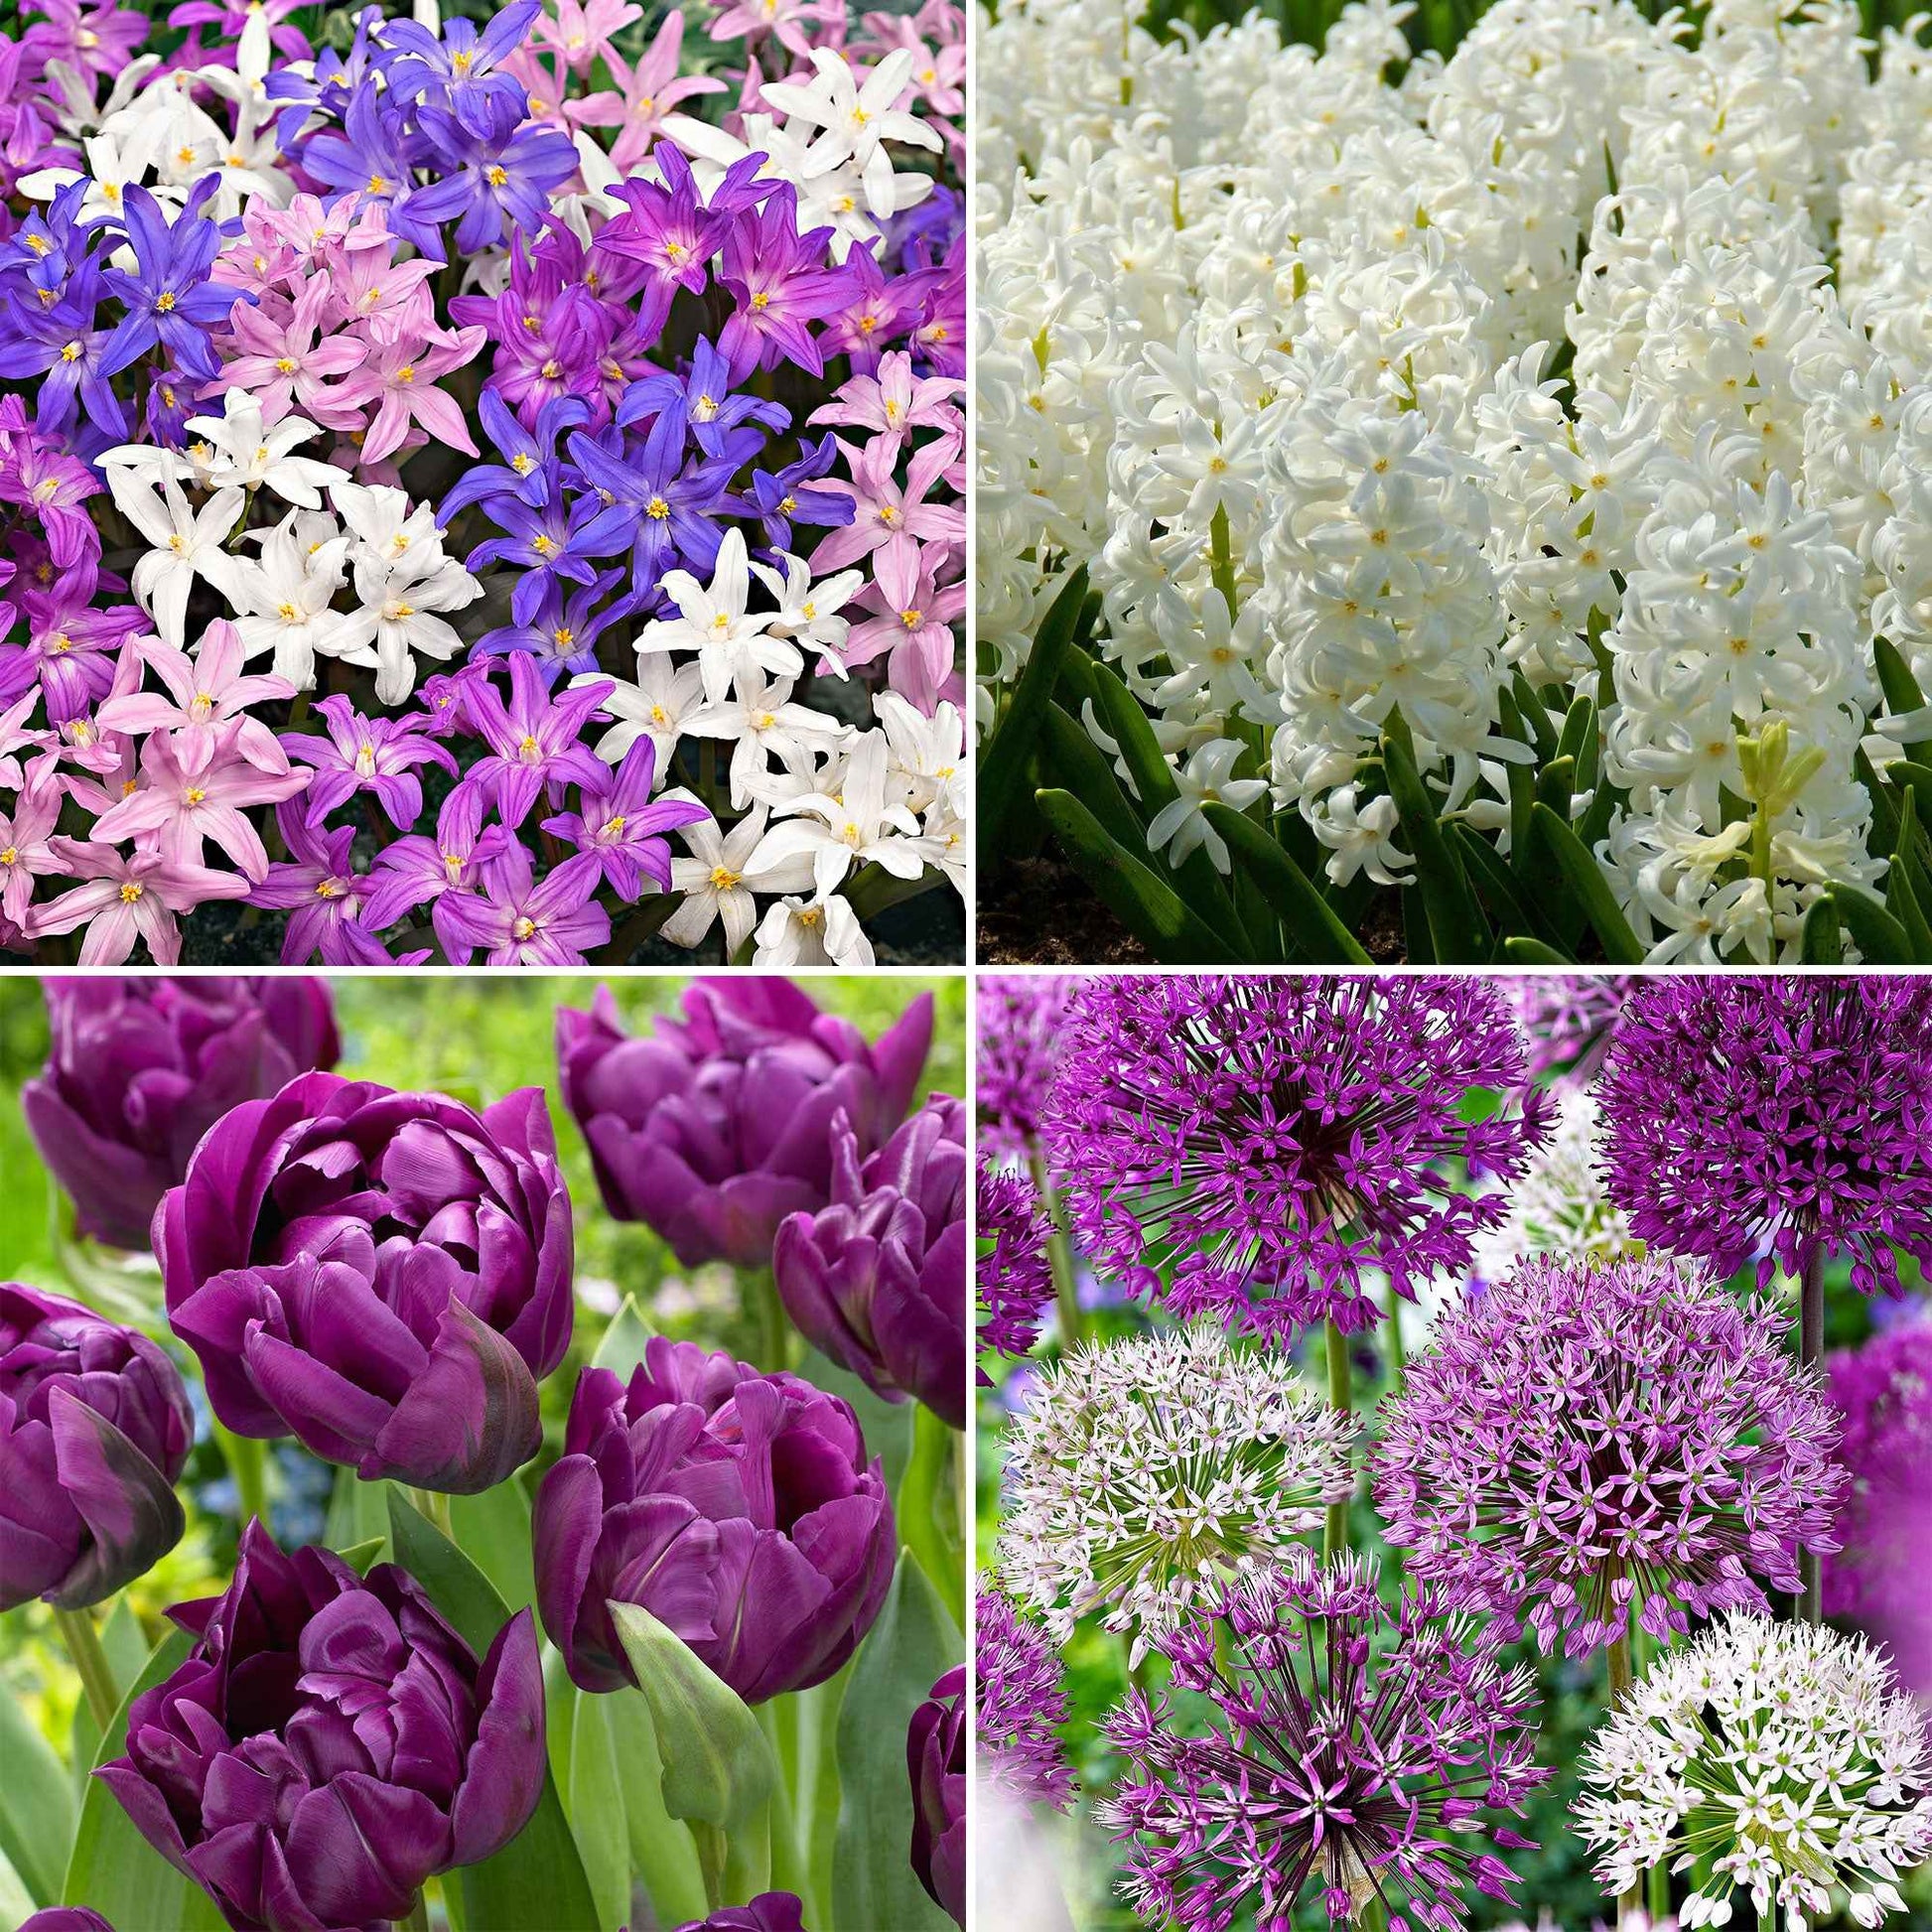 88x Blumenzwiebelpaket 'März bis Juni 90 Tage Blumen' lila-weiβ - Alle beliebten Blumenzwiebeln